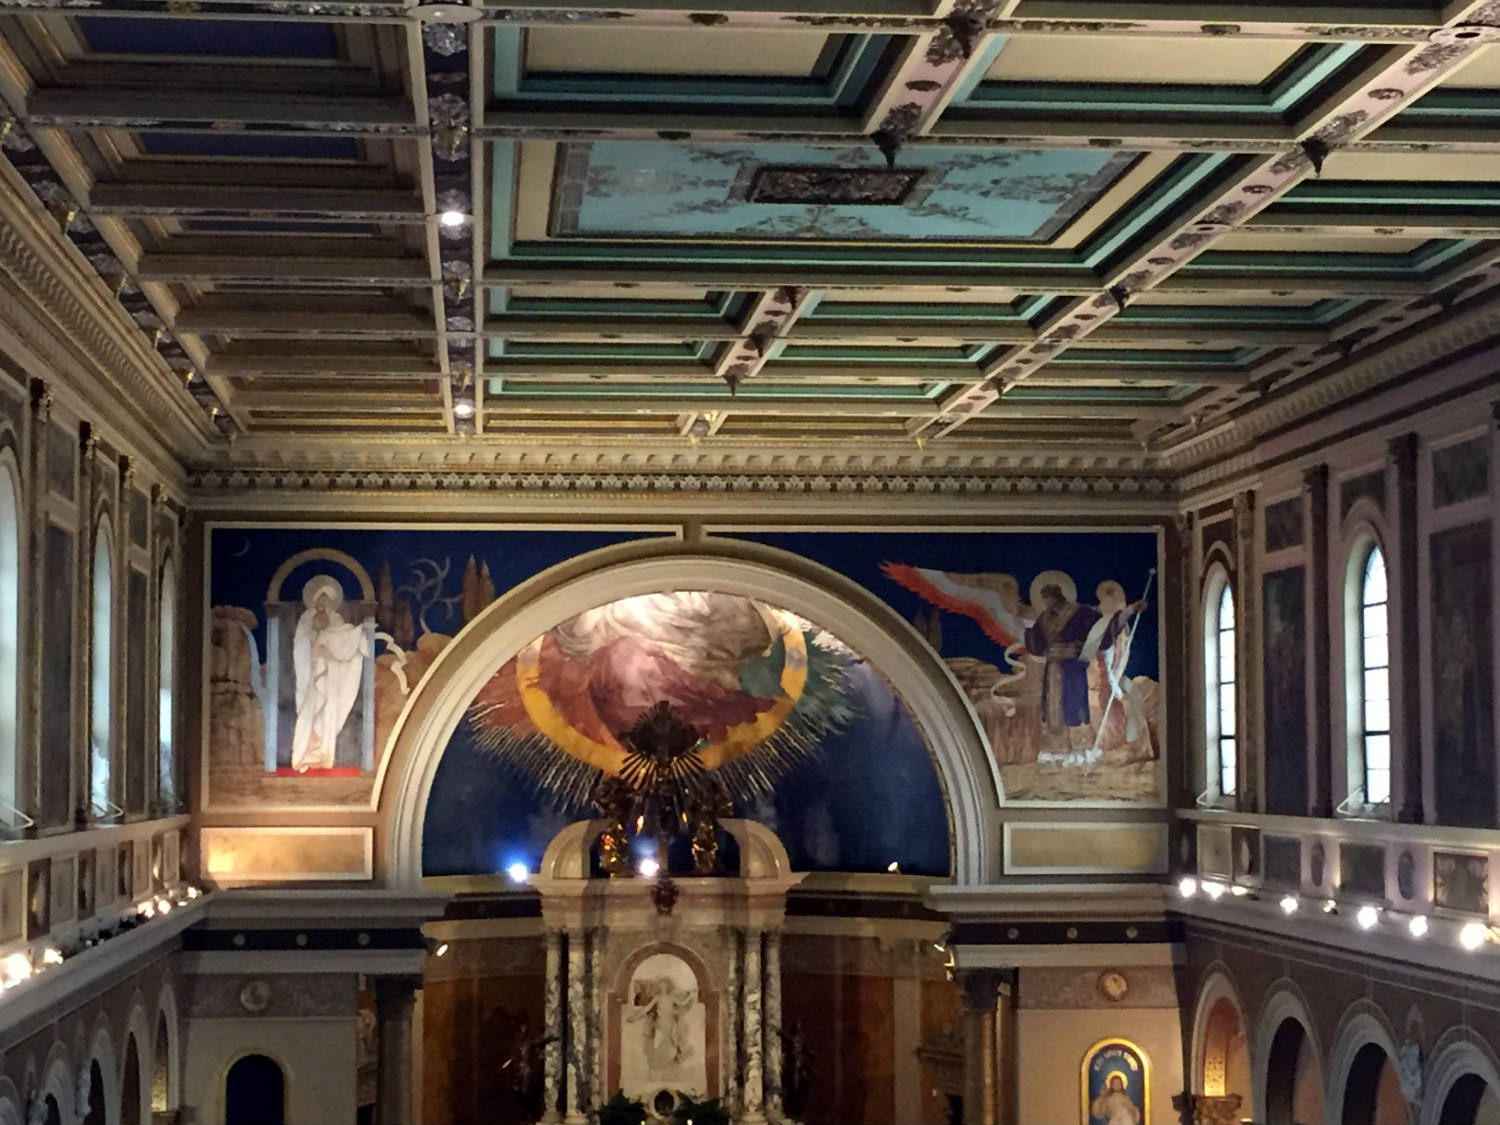 Murals in St. Luke's Mission in Buffalo, New York